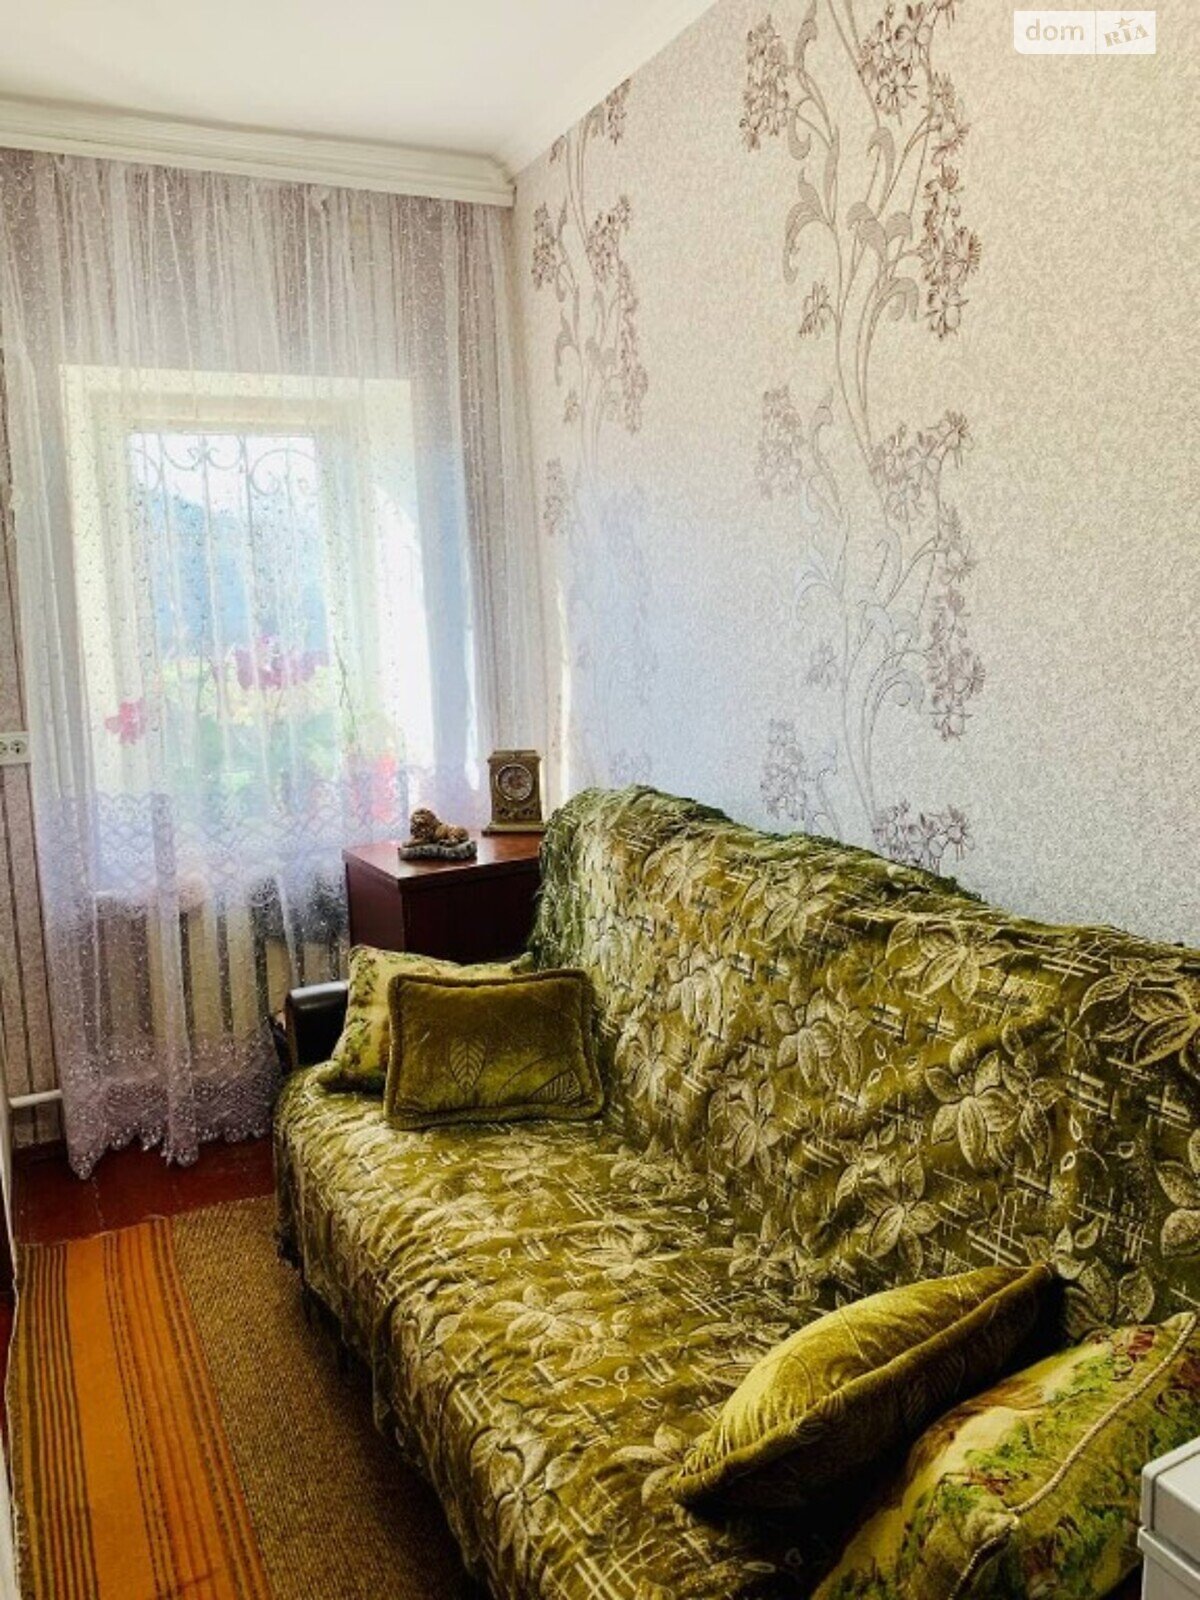 Продажа части дома в Николаеве, улица Мастерская 43, район Центральный, 1 комната фото 1